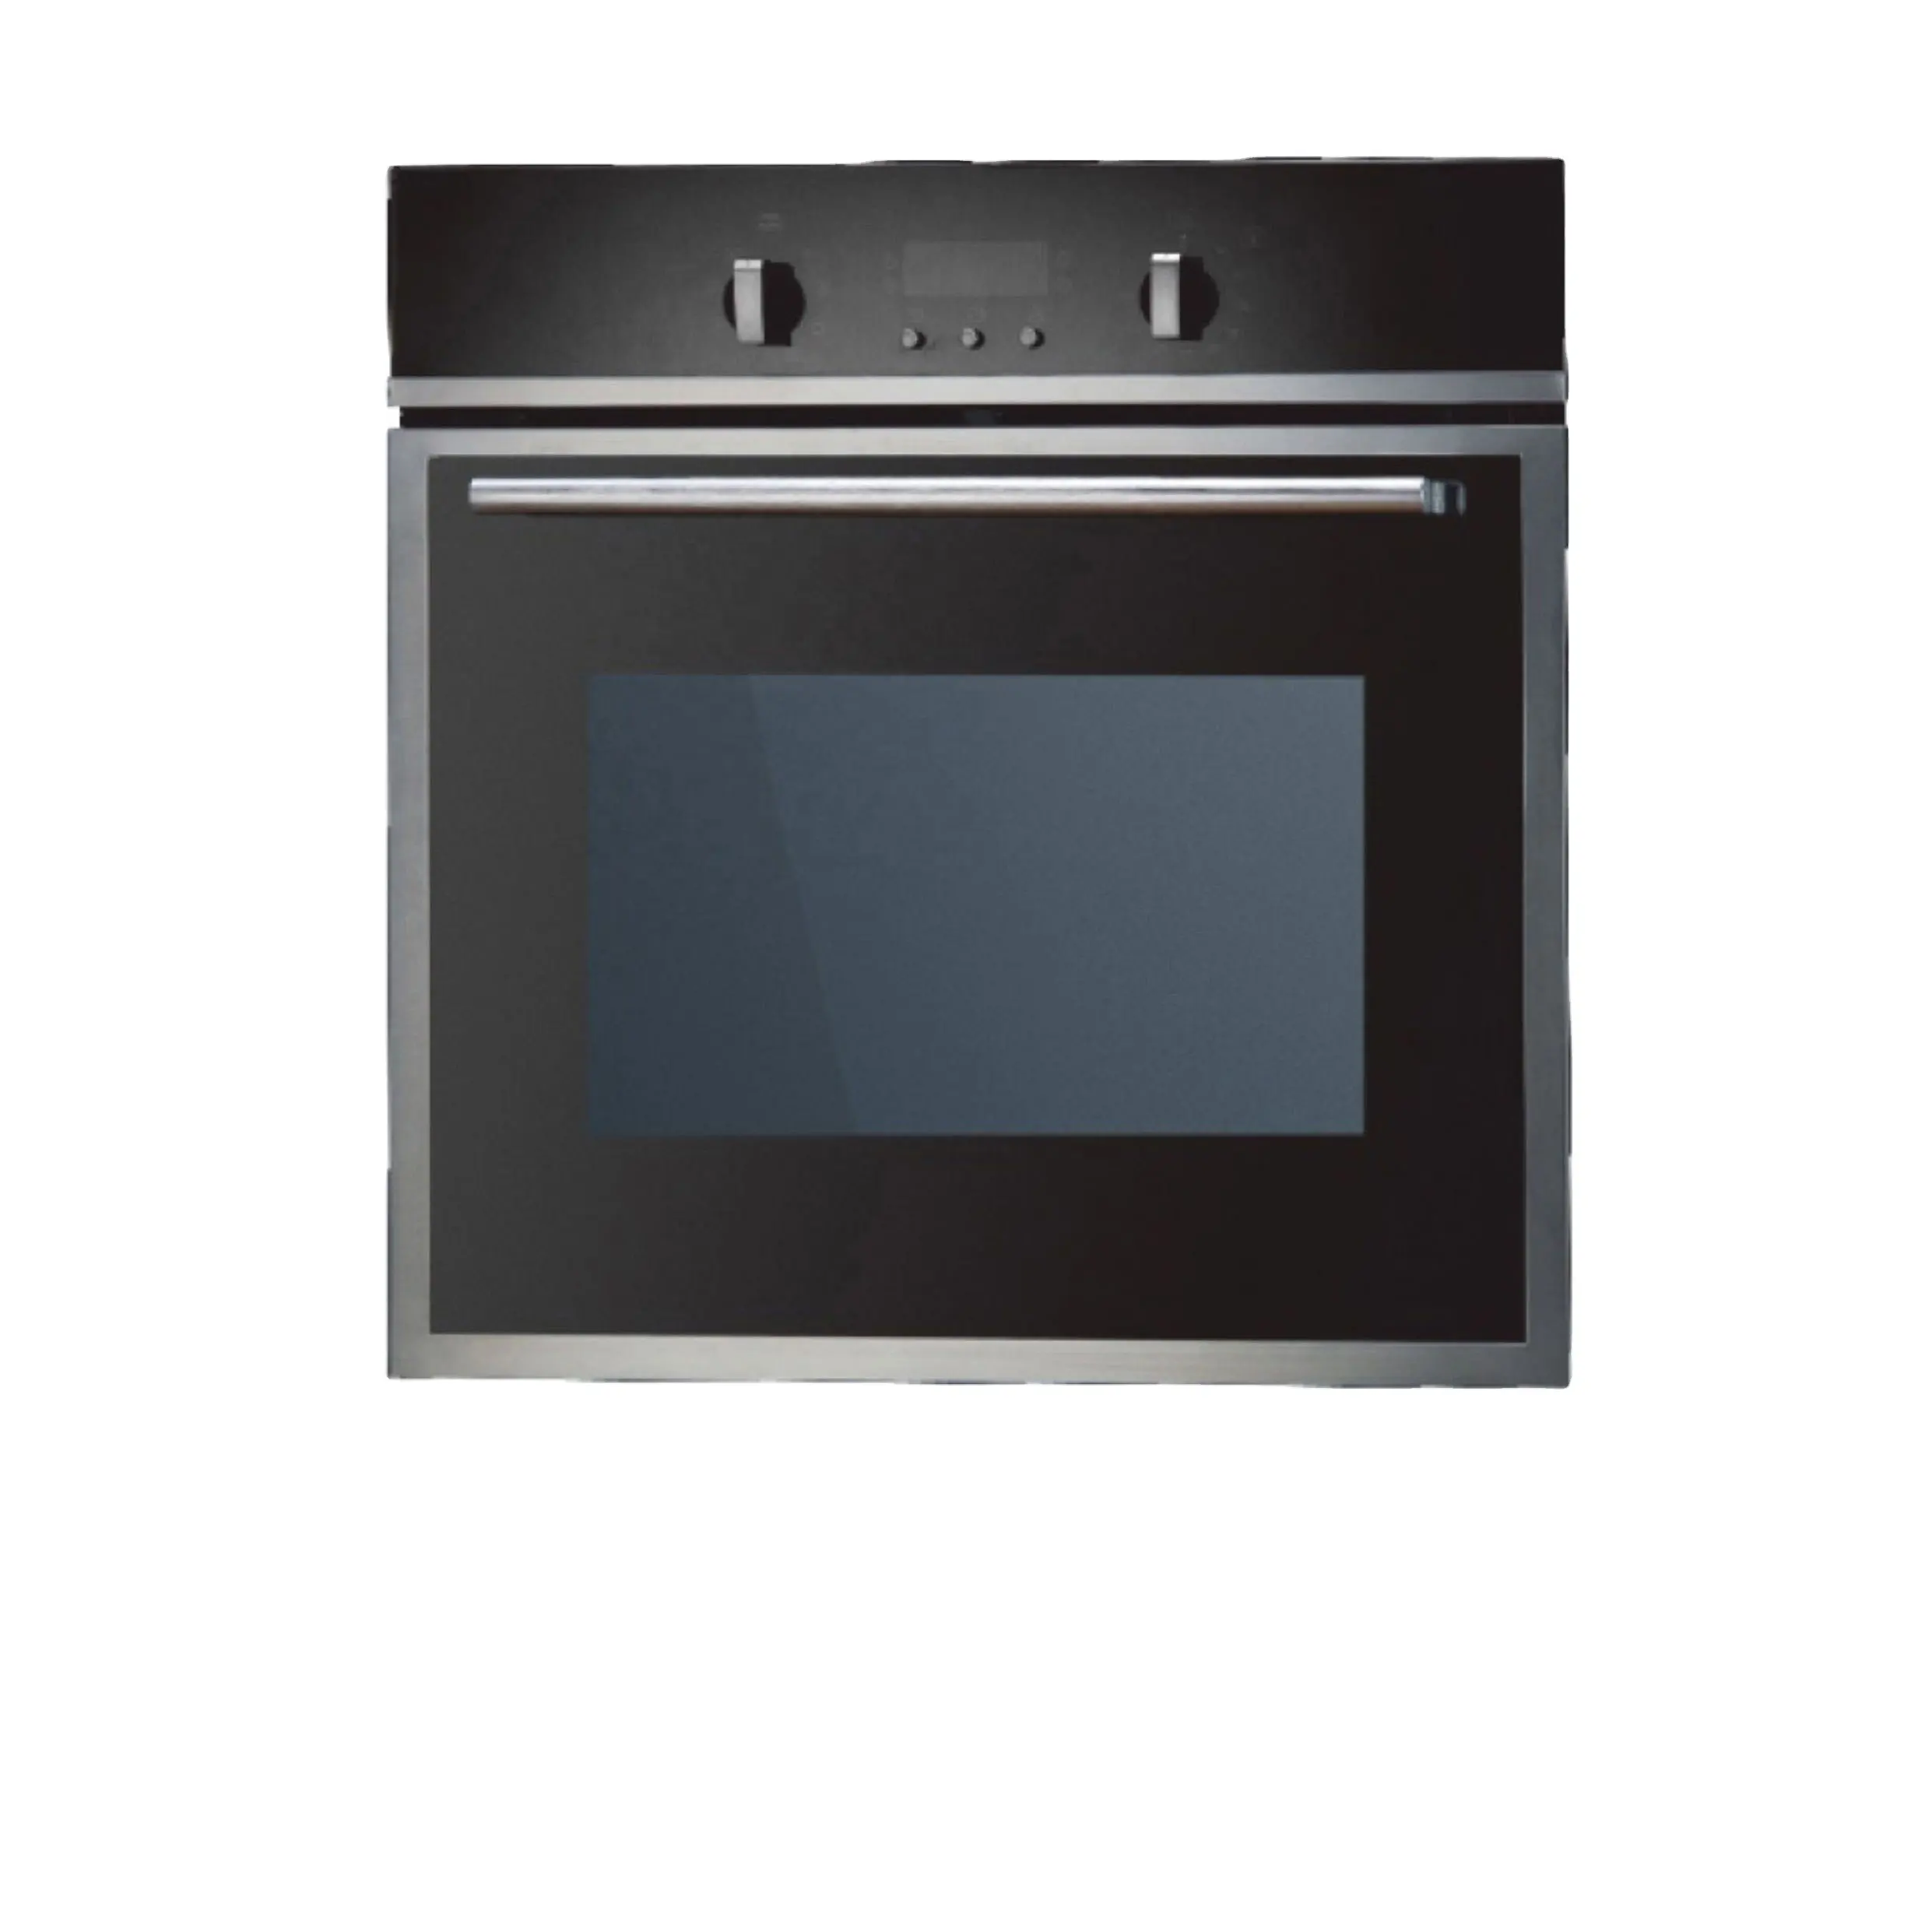 Estufas y hornos de cocina, estufa eléctrica de 110v, estufa de cocina para el hogar